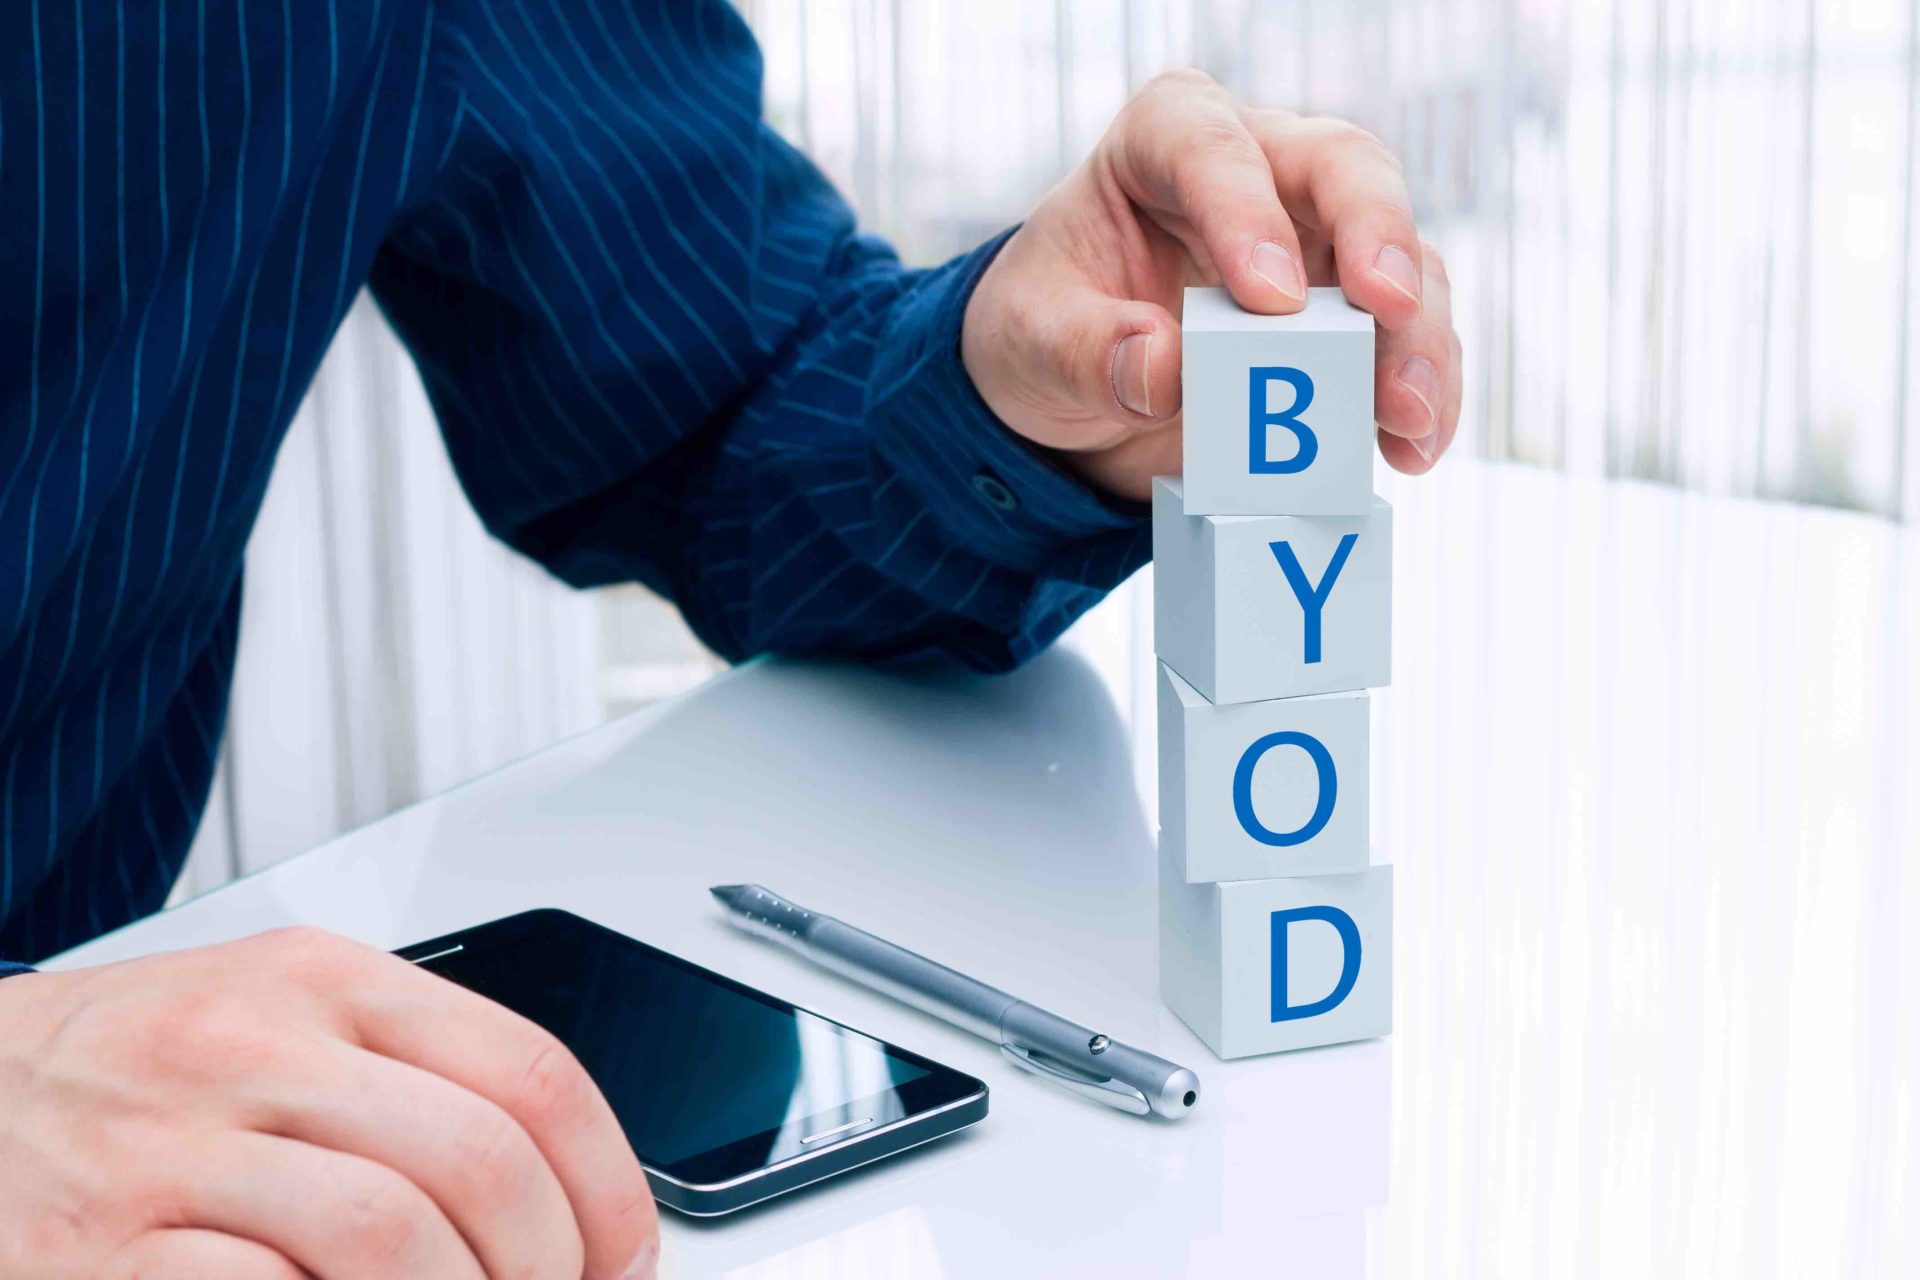 Il BYOD (Bring Your Own Device / Porta il tuo dispositivo) è ormai una strategia adottata da numerose aziende